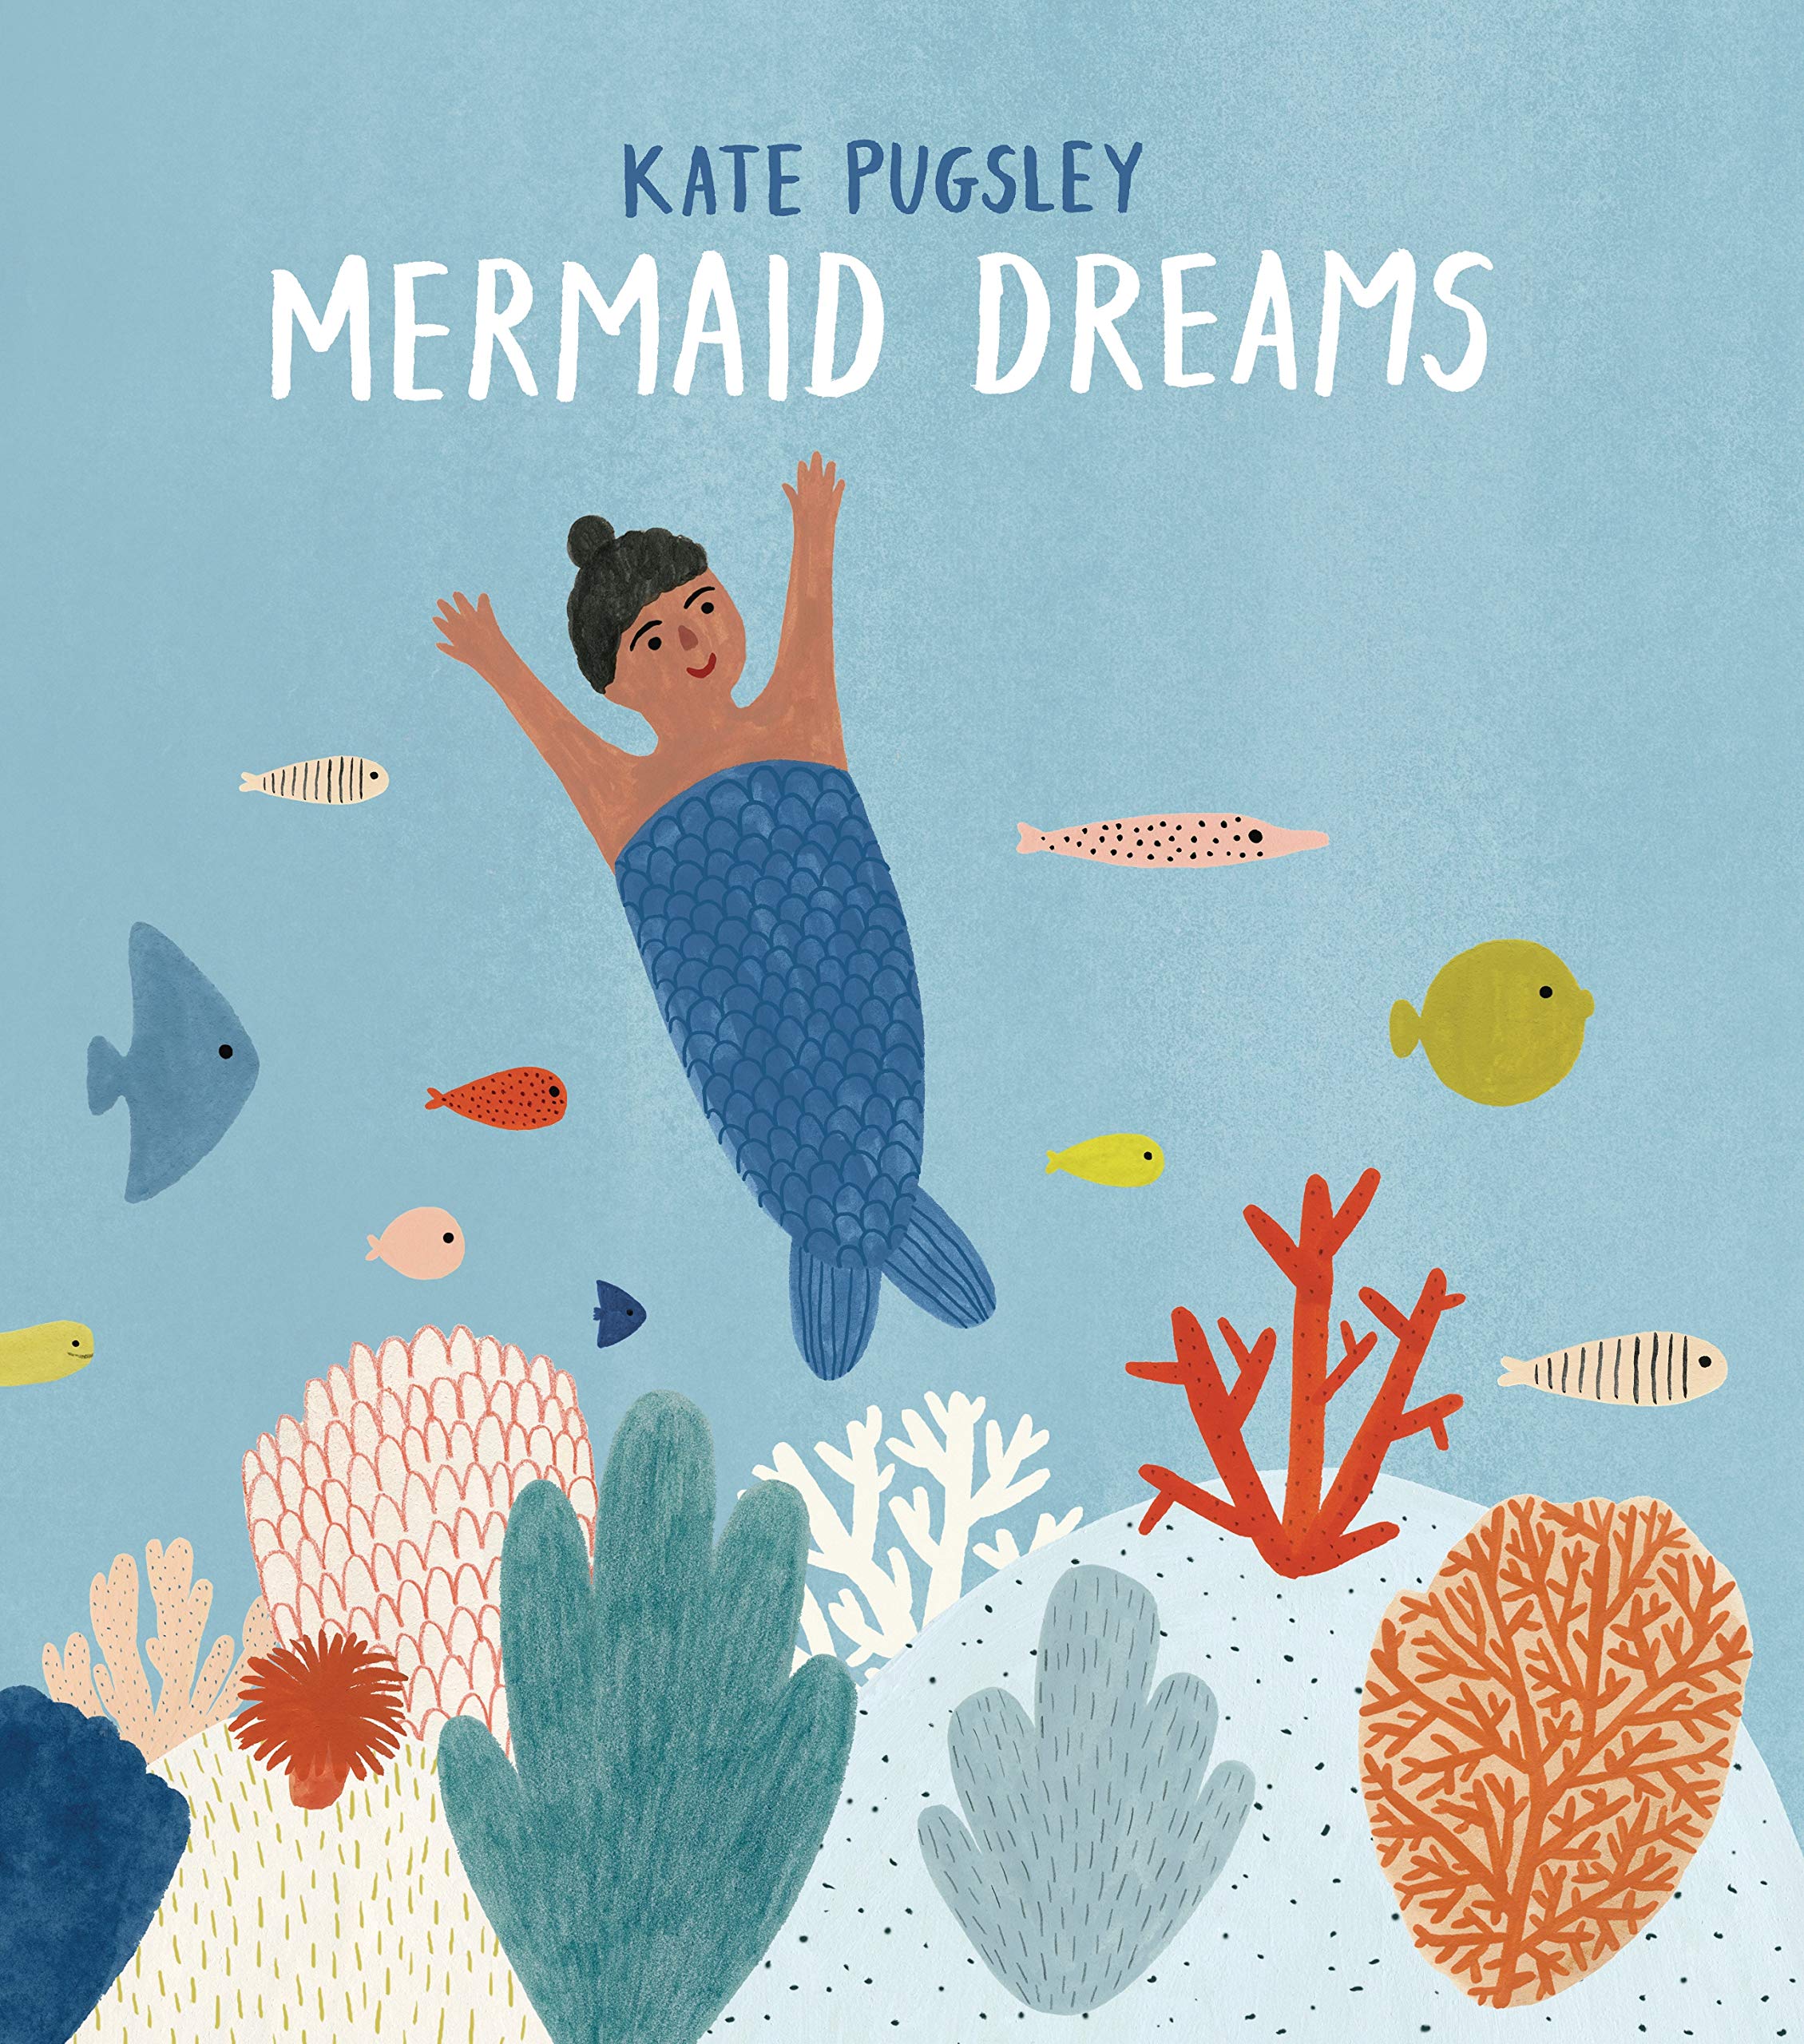 Kate Pugsley, Mermaid dream, Tundra book